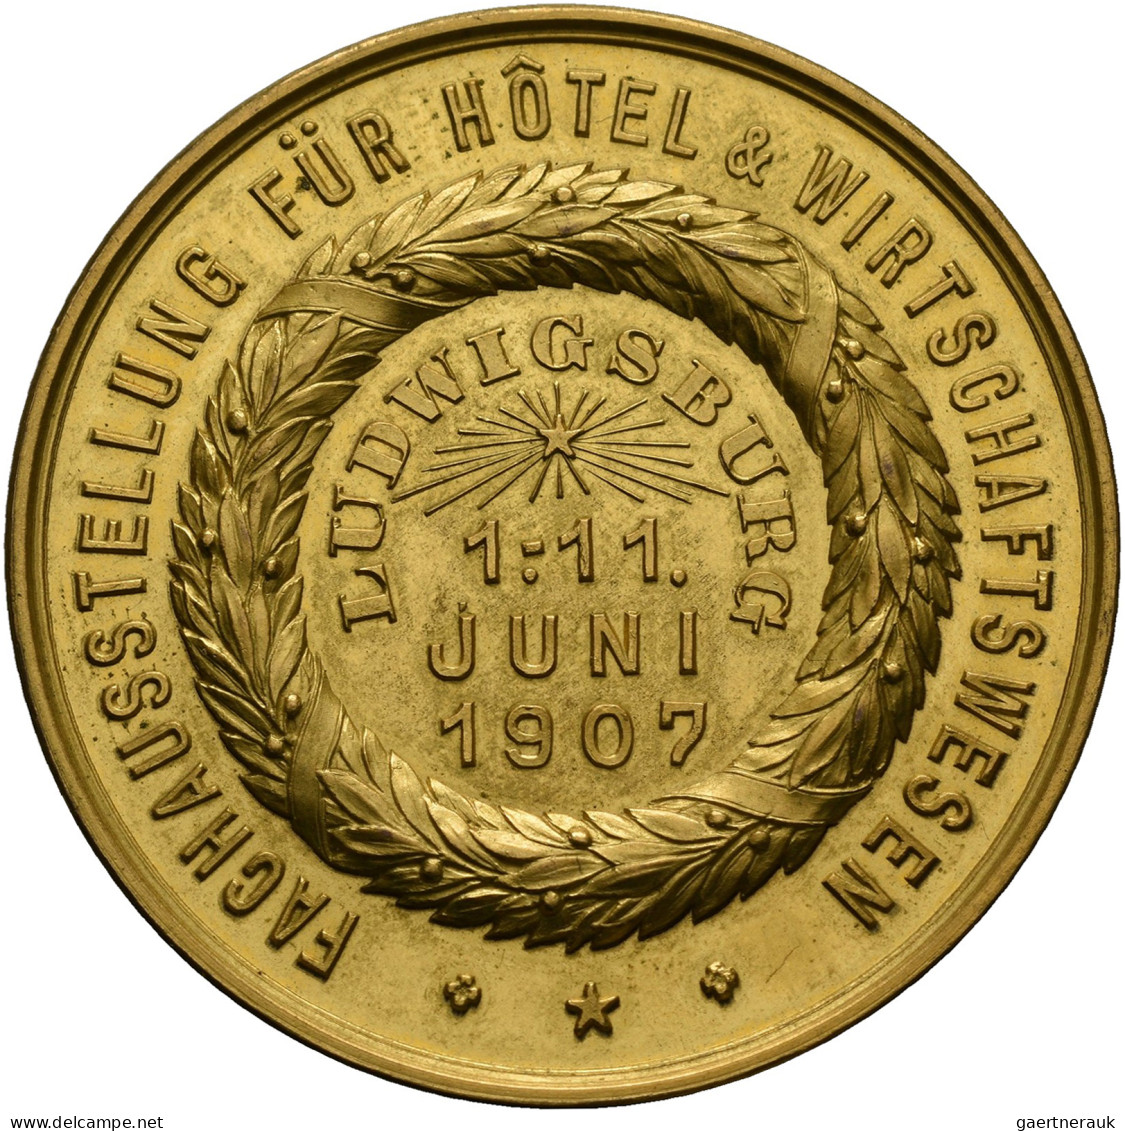 Medaillen Deutschland - Geographisch: Sammlung Ludwigsburg:  Ein besonderes Auge